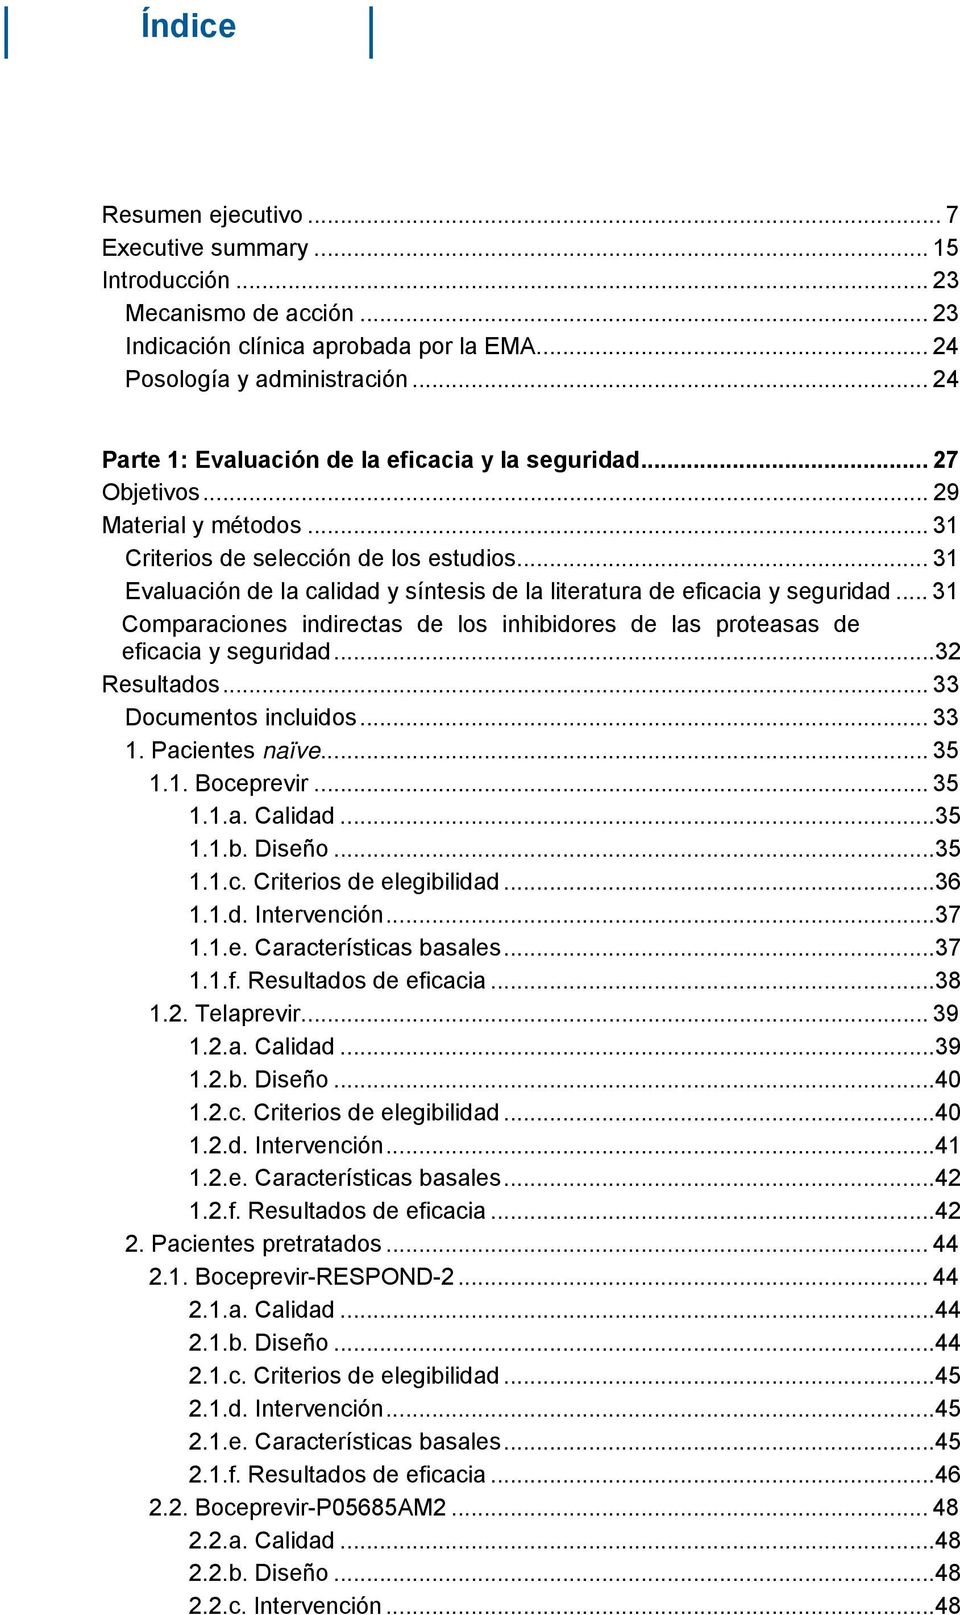 .. 31 Evaluación de la calidad y síntesis de la literatura de eficacia y seguridad... 31 Comparaciones indirectas de los inhibidores de las proteasas de eficacia y seguridad...32 Resultados.